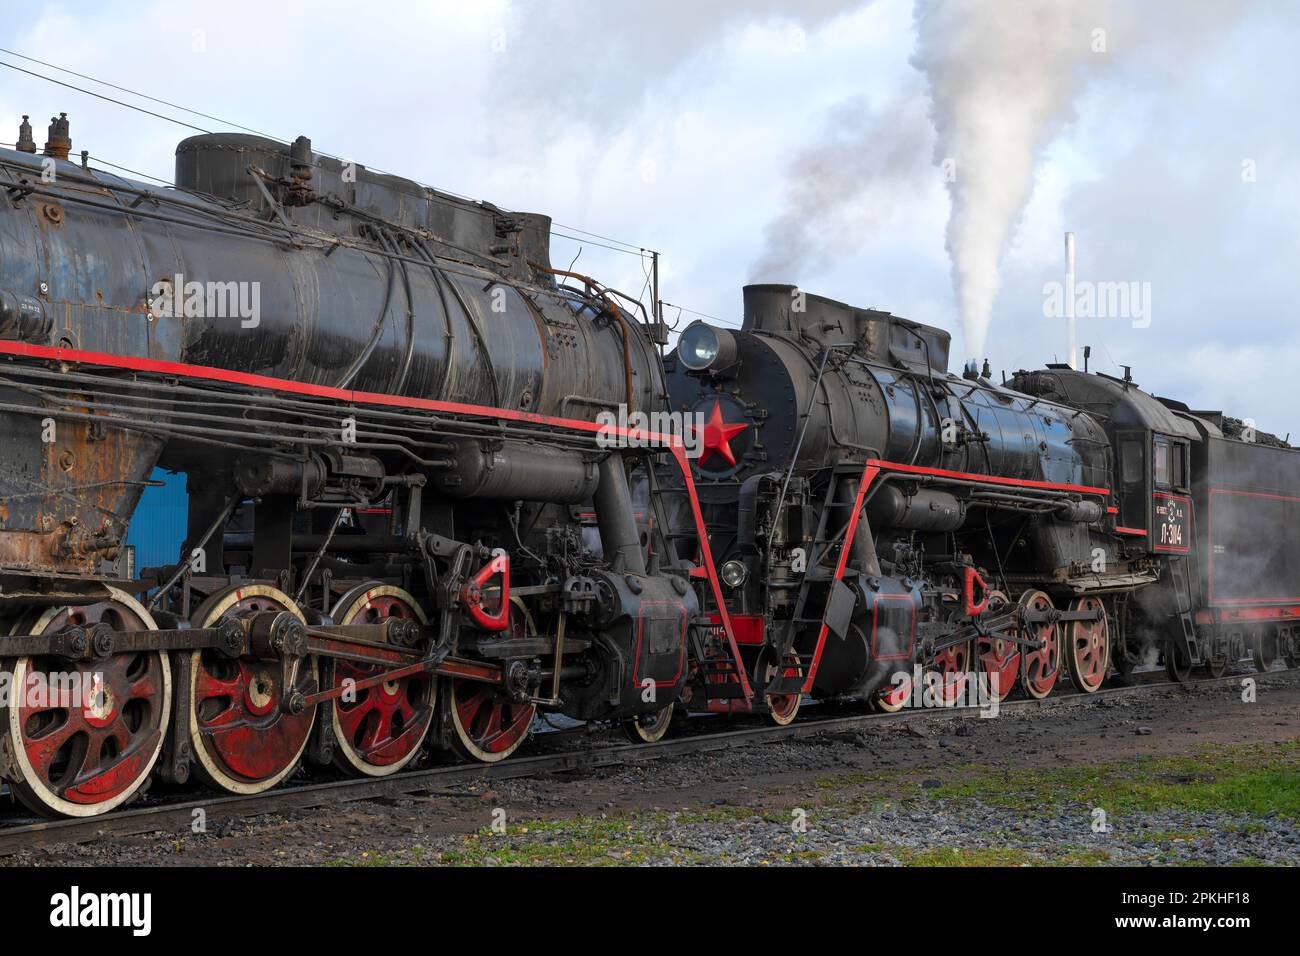 SORTAVALA, RUSSLAND - 09. OKTOBER 2022: Bei den alten sowjetischen Dampflokomotiven an einem bewölkten Oktobermorgen. Bahnhof Sortavala Stockfoto